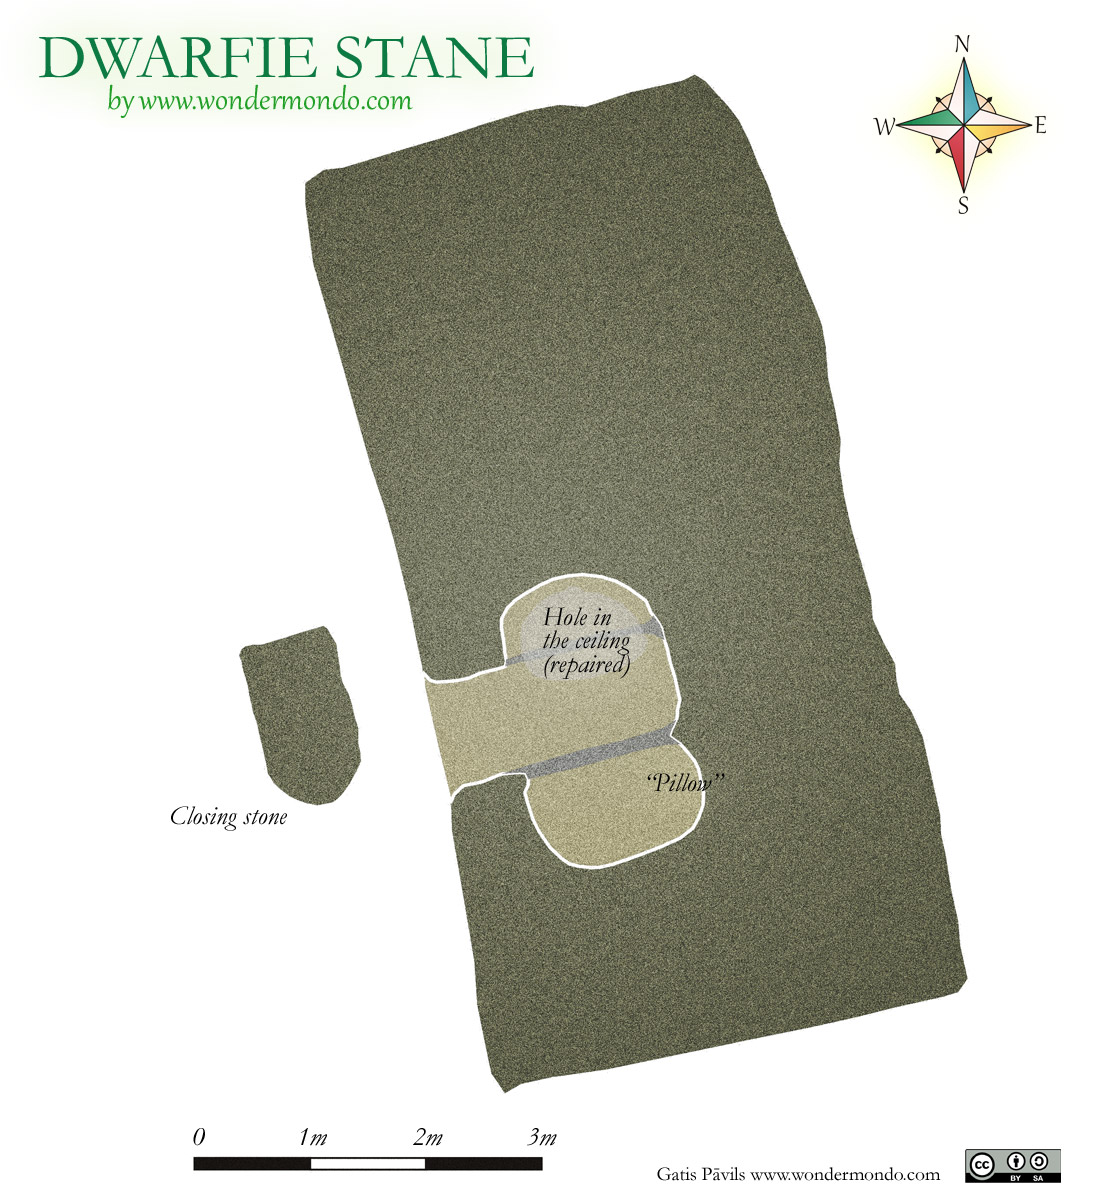 Plan of Dwarfie Stane